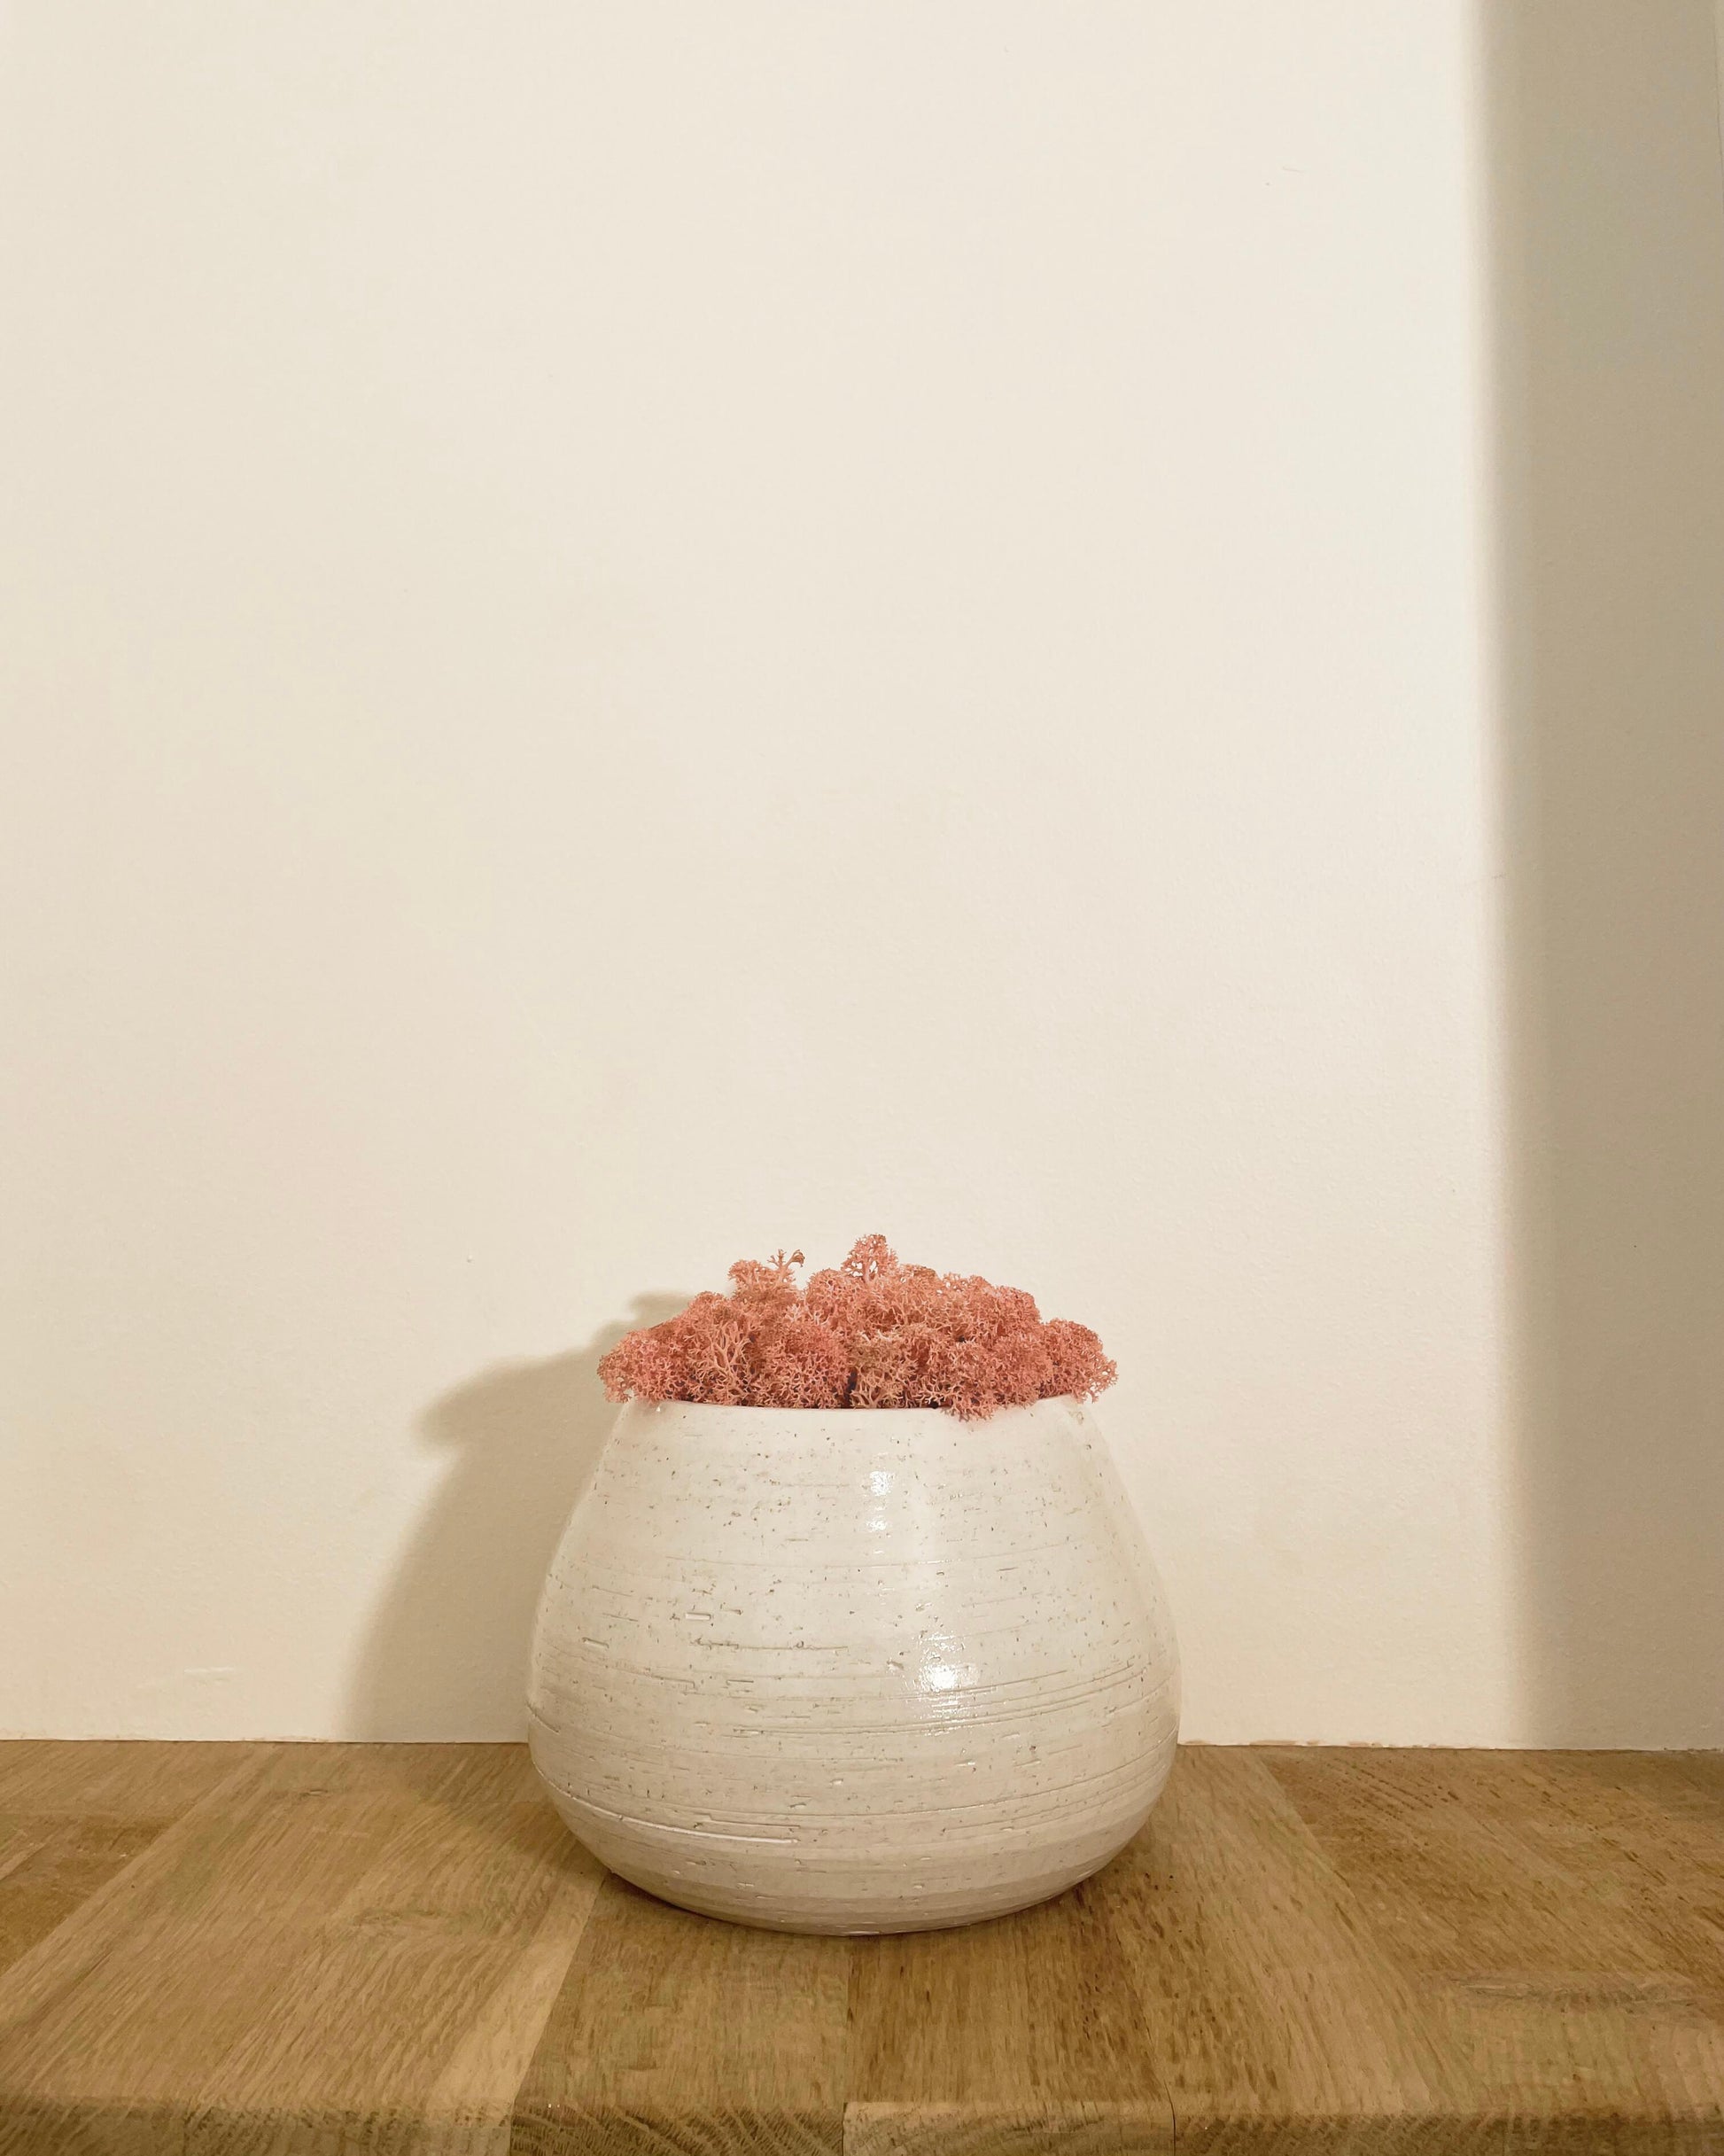 Composition lichen avec un support en poterie blanche posé sur une tablette en bois massif. Le lichen stabilisé est rose